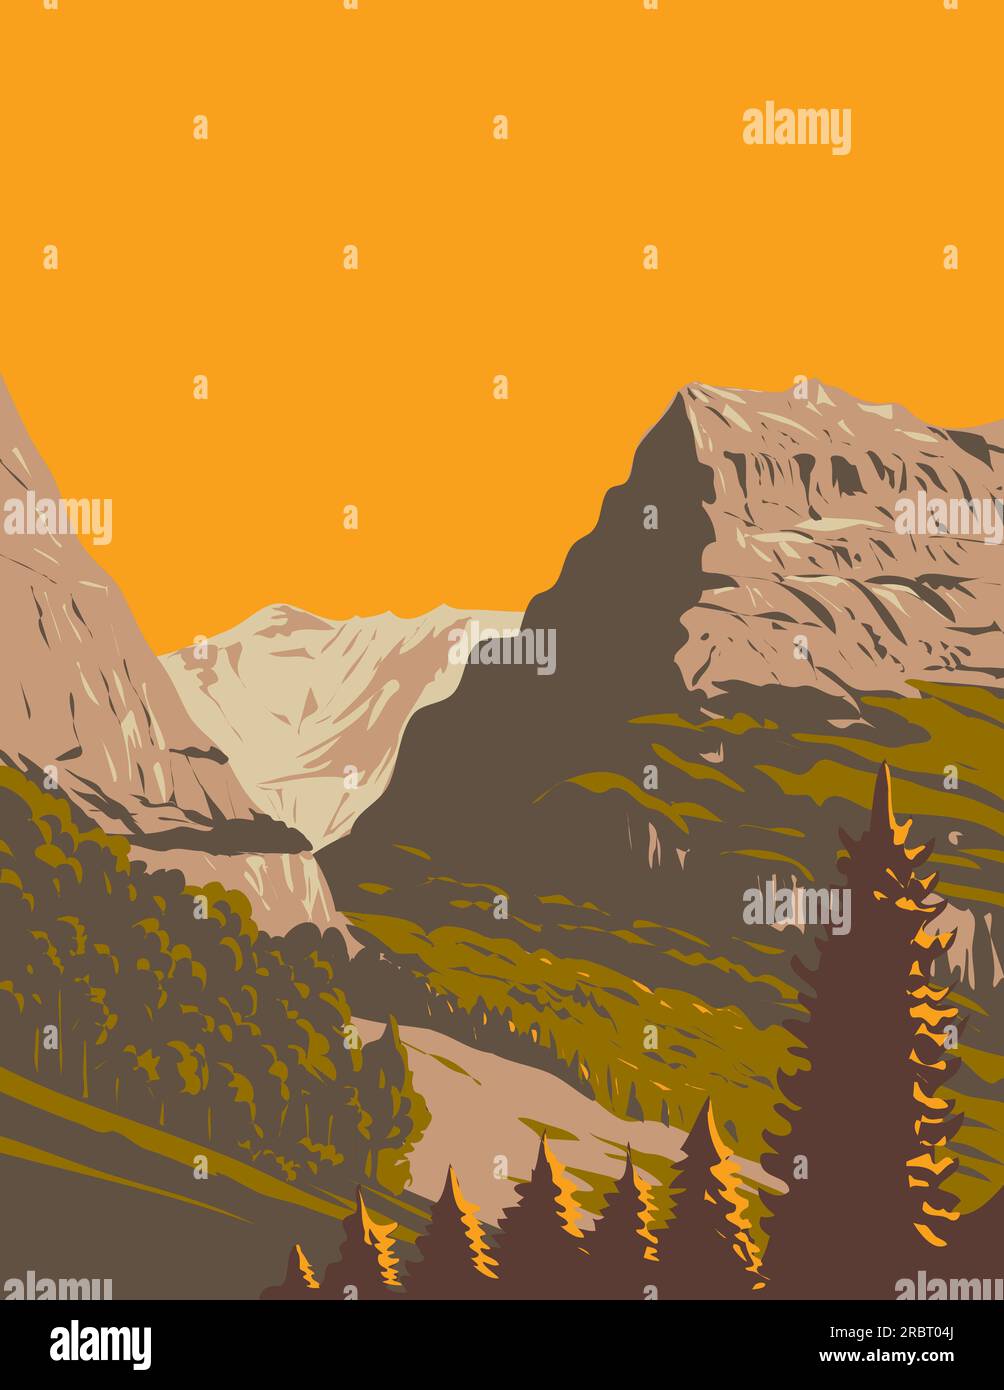 WPA affiche art de la vallée de Grindelwald avec Mattenberg en arrière-plan situé en Suisse fait dans des travaux d'administration de projet ou Art Déco styl Banque D'Images